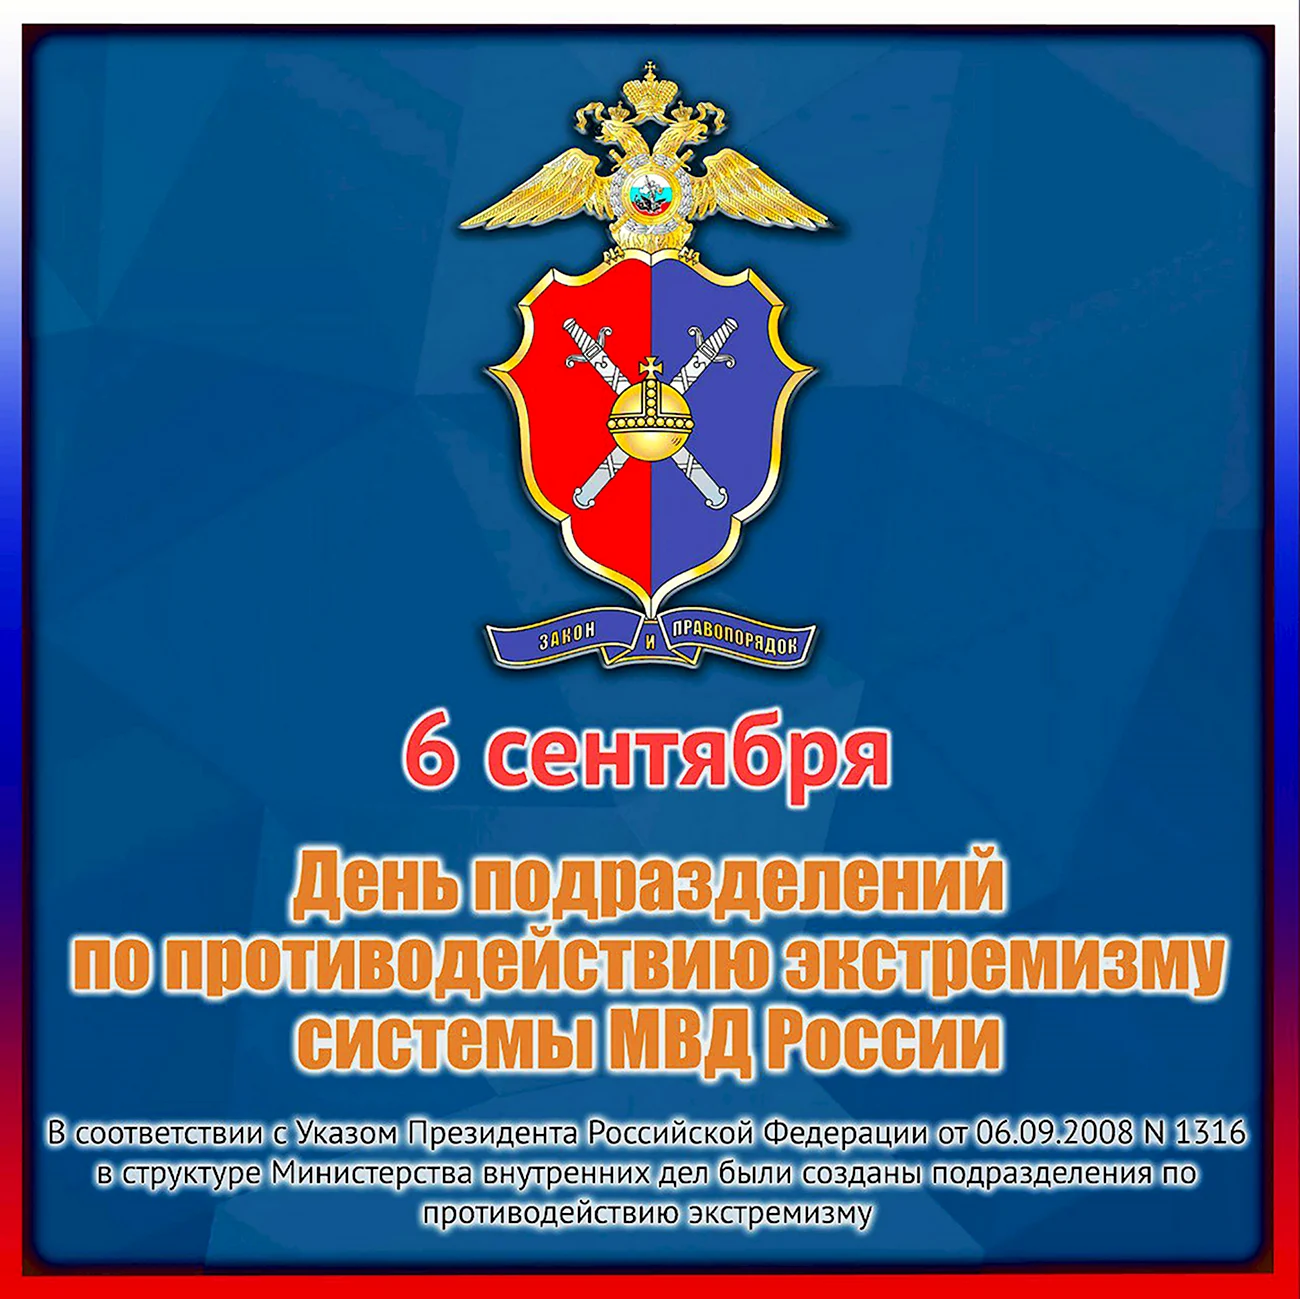 День подразделений по противодействию экстремизму МВД РФ 6 сентября. Поздравление